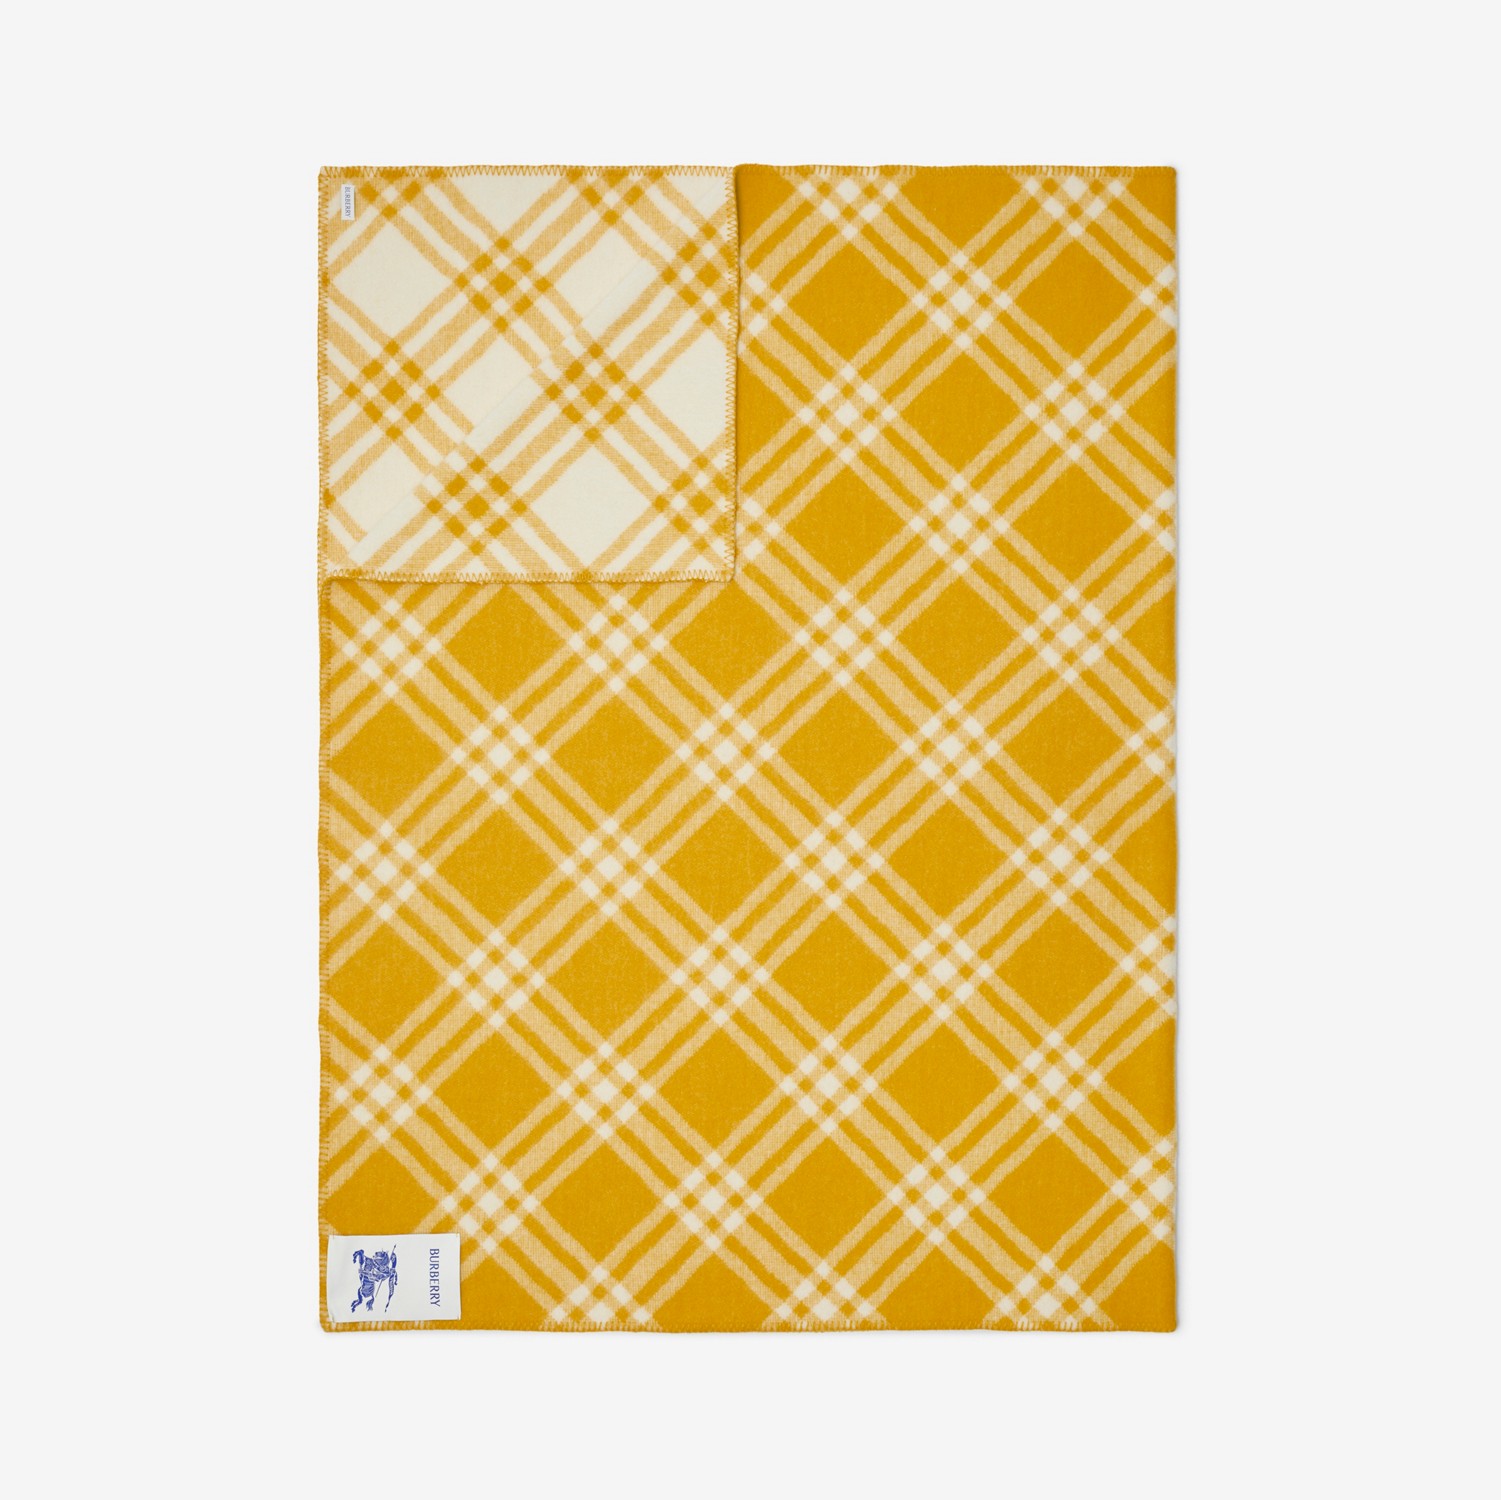 Manta de lã xadrez (Pear) | Burberry® oficial